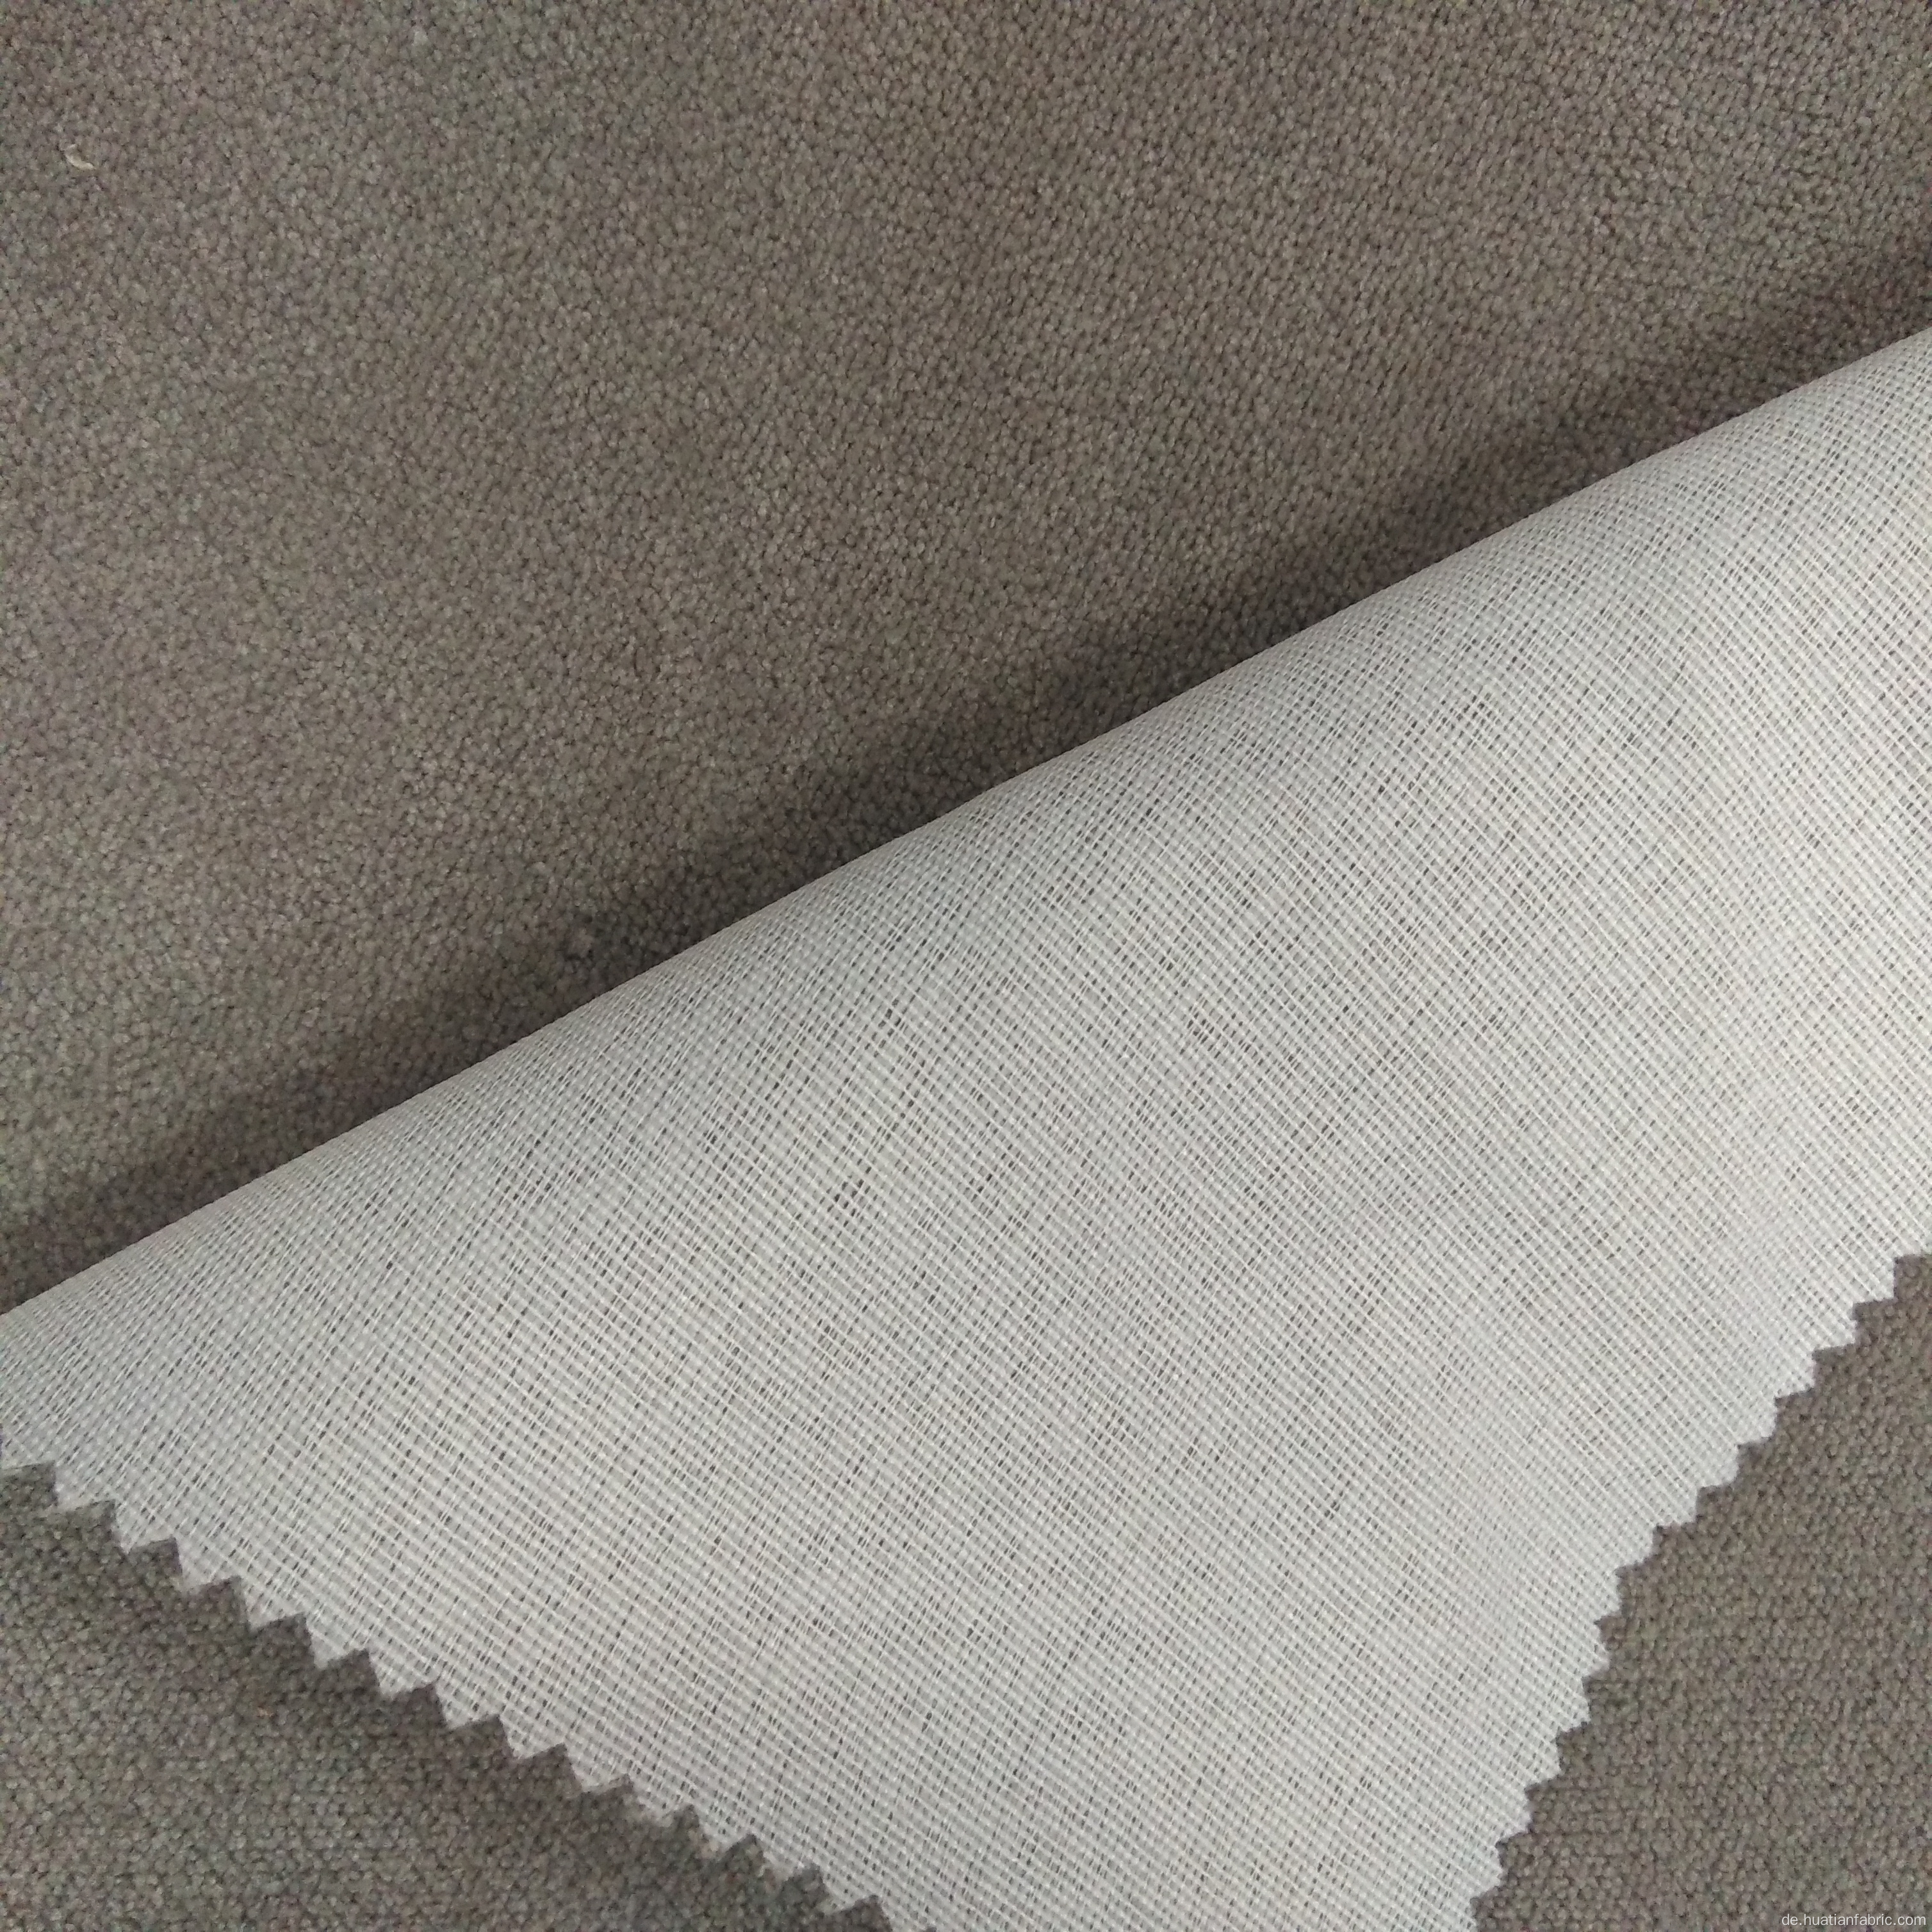 Hohe Qualität 100% Polyester-Wildleder-Stoff für Sofa